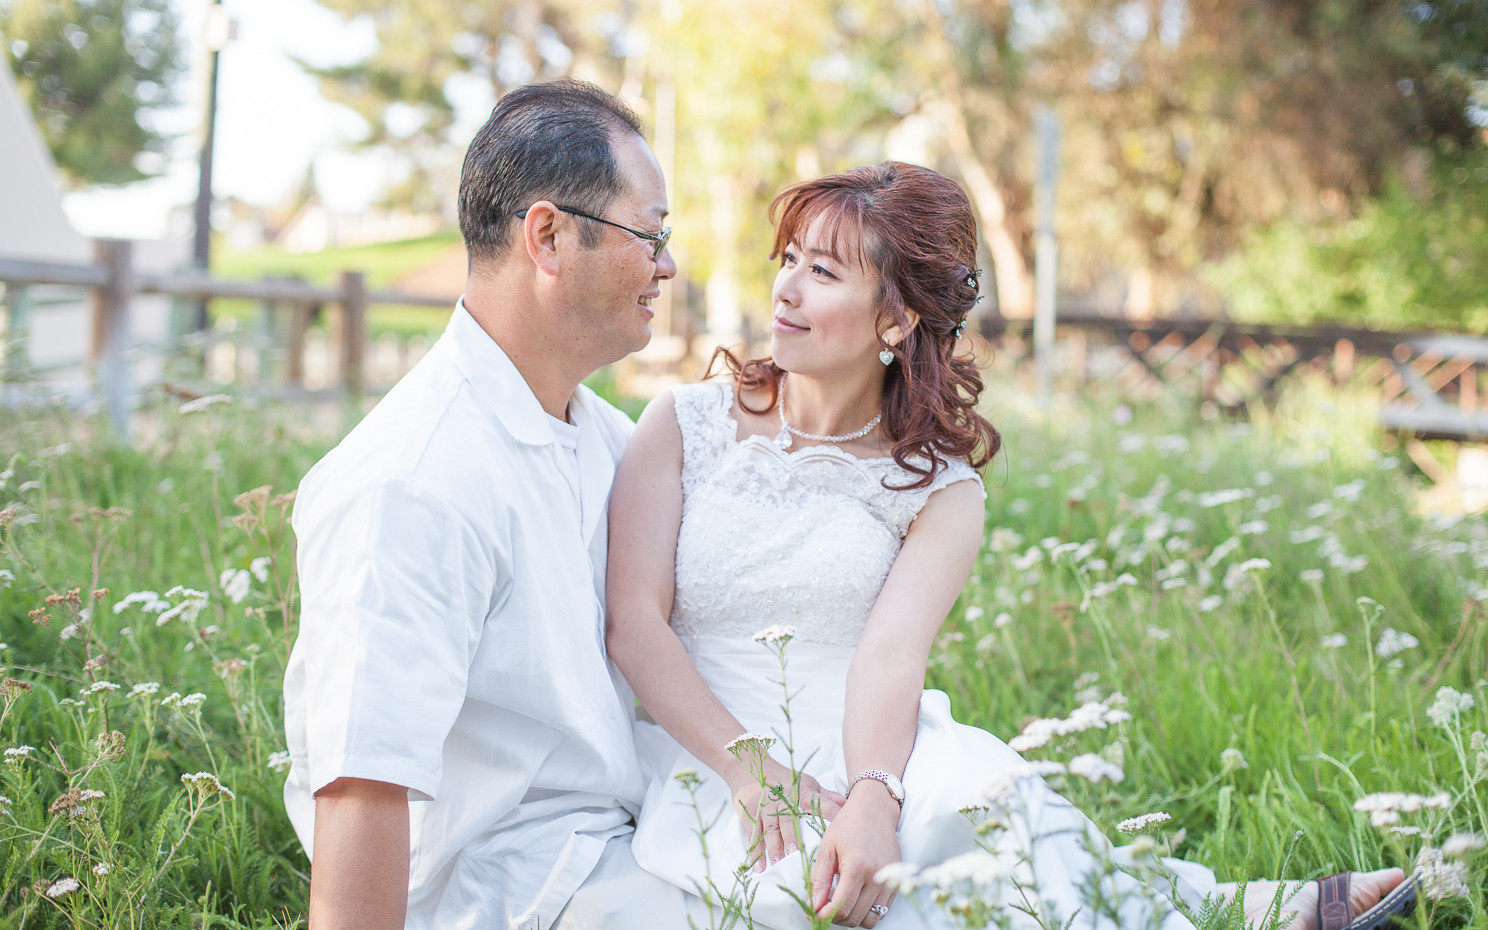 David & Marie’s Marriage Renewal | Walnut, CA